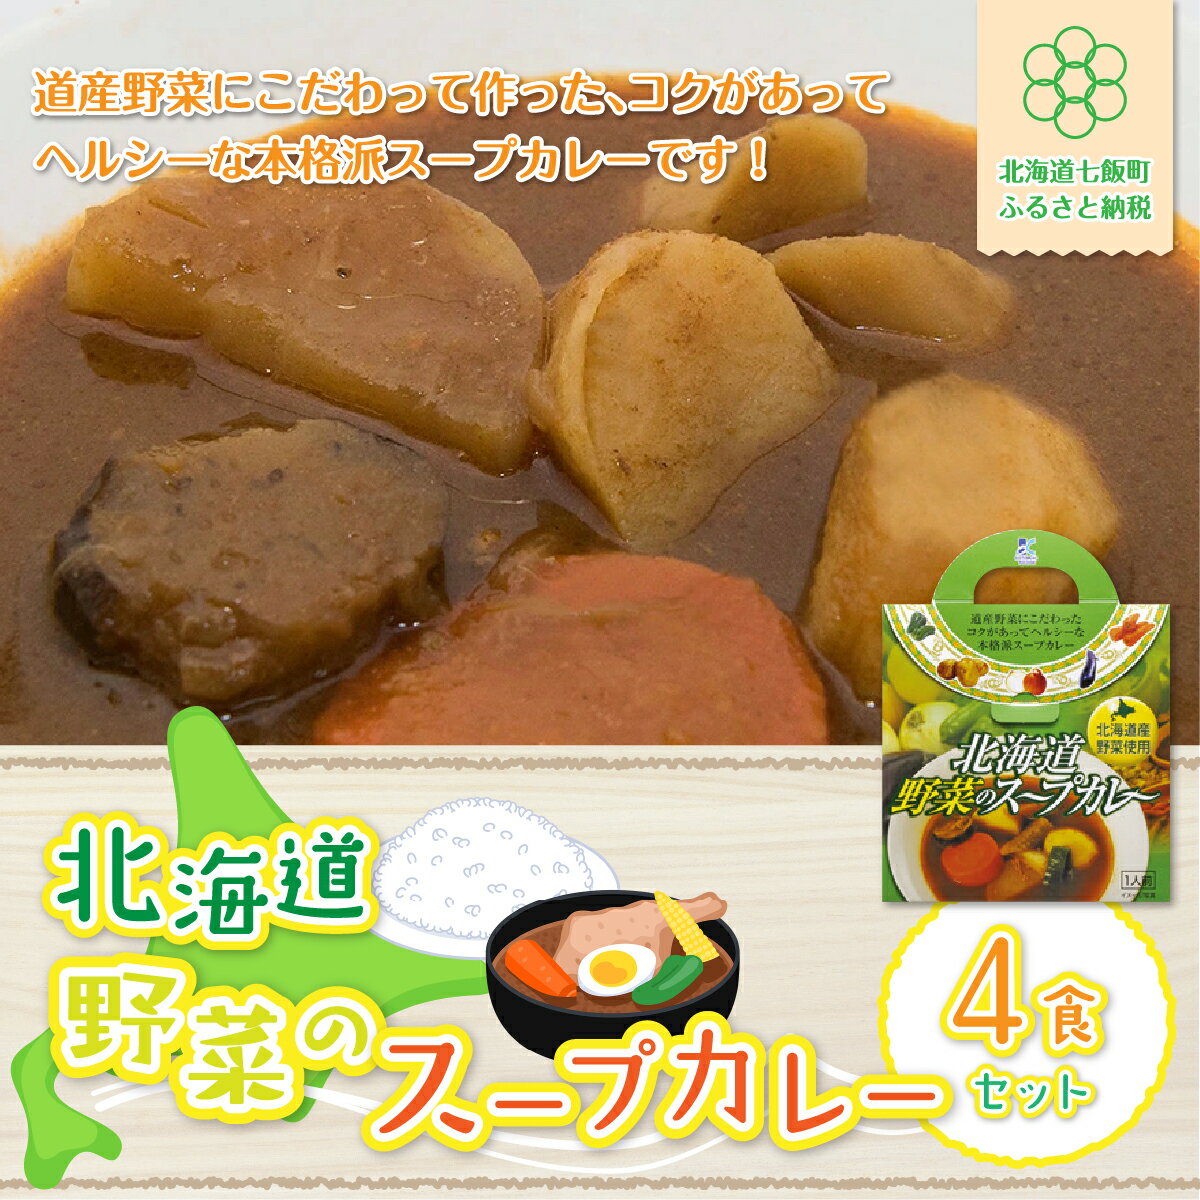 【北海道野菜のスープカレー】4食セット 北海道産野菜使用 スープカレー 野菜 ベジタリアン カレーライス 北海道産 NAO018